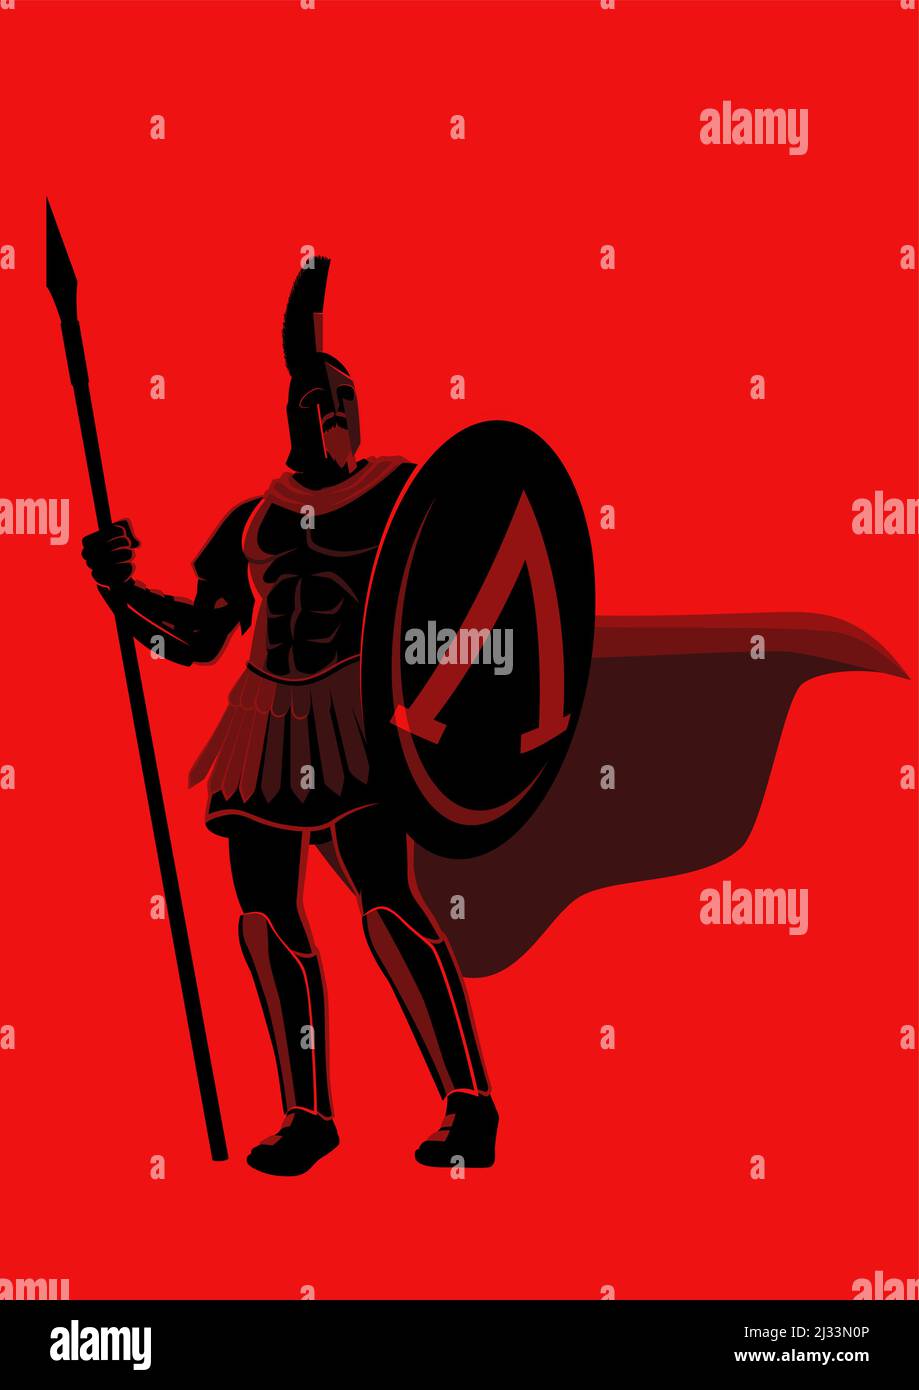 Illustration vectorielle plate simple du guerrier spartien portant un casque et un manteau rouge, illustration de la fantaisie Leonidas Illustration de Vecteur